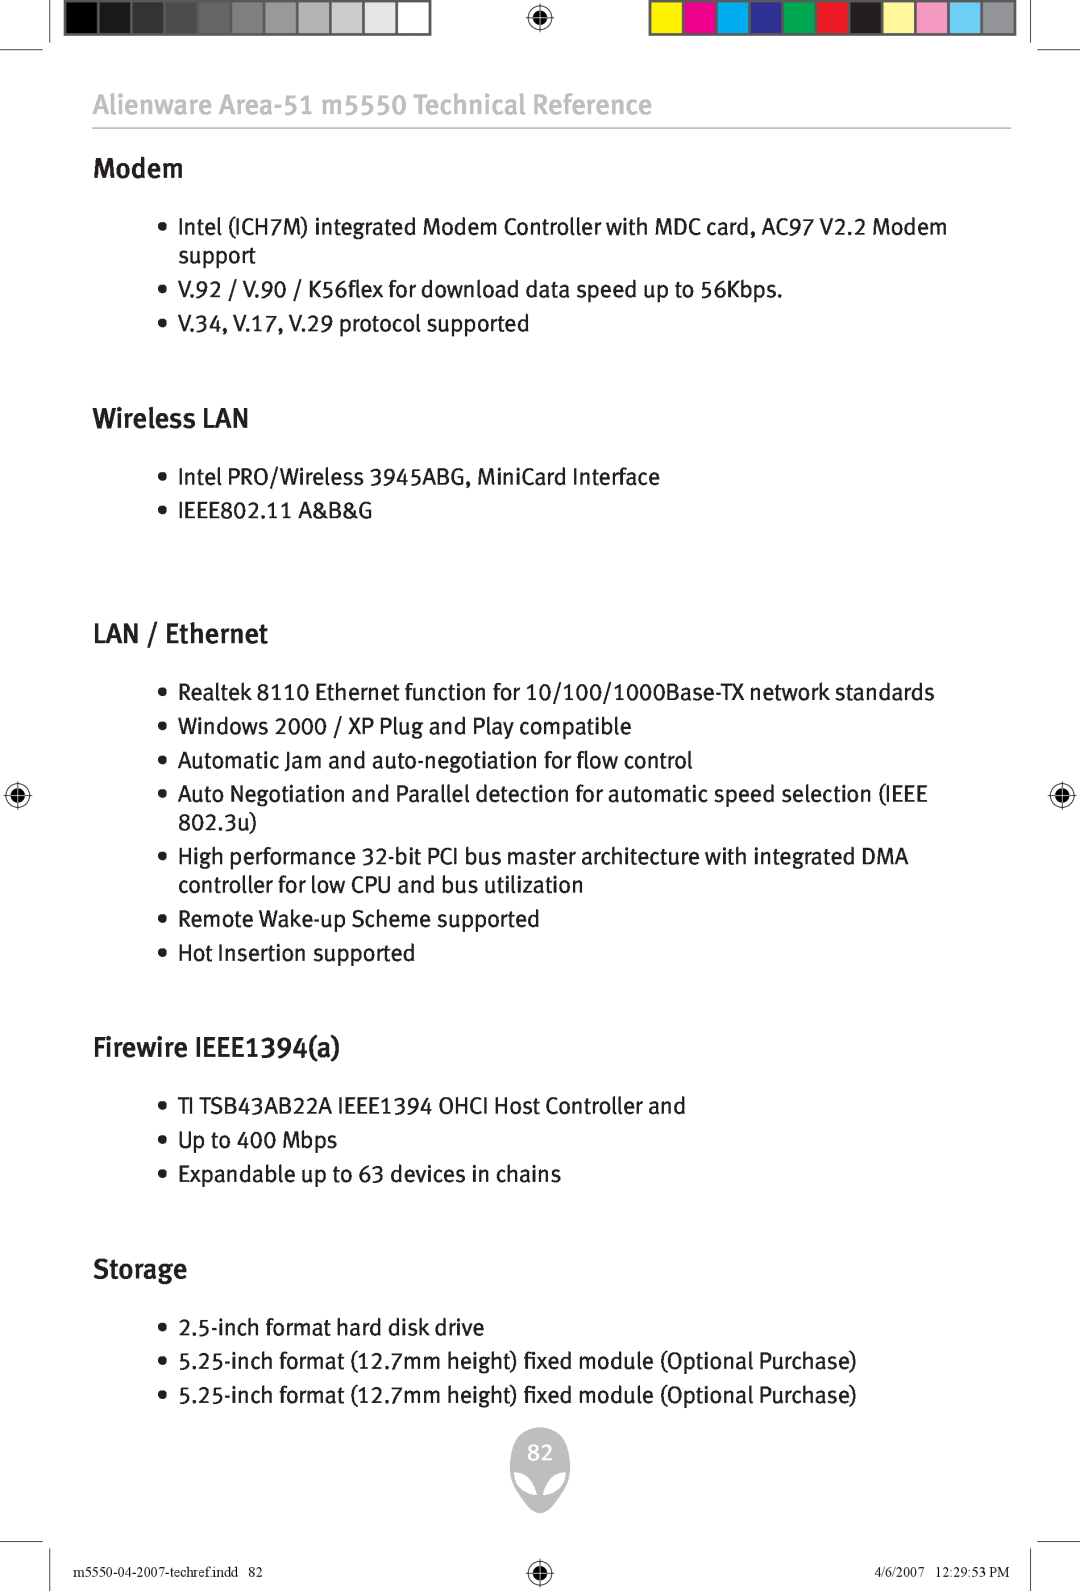 Alienware Modem, LAN / Ethernet, Firewire IEEE1394a, Storage, Alienware Area-51 m5550 Technical Reference, Wireless LAN 